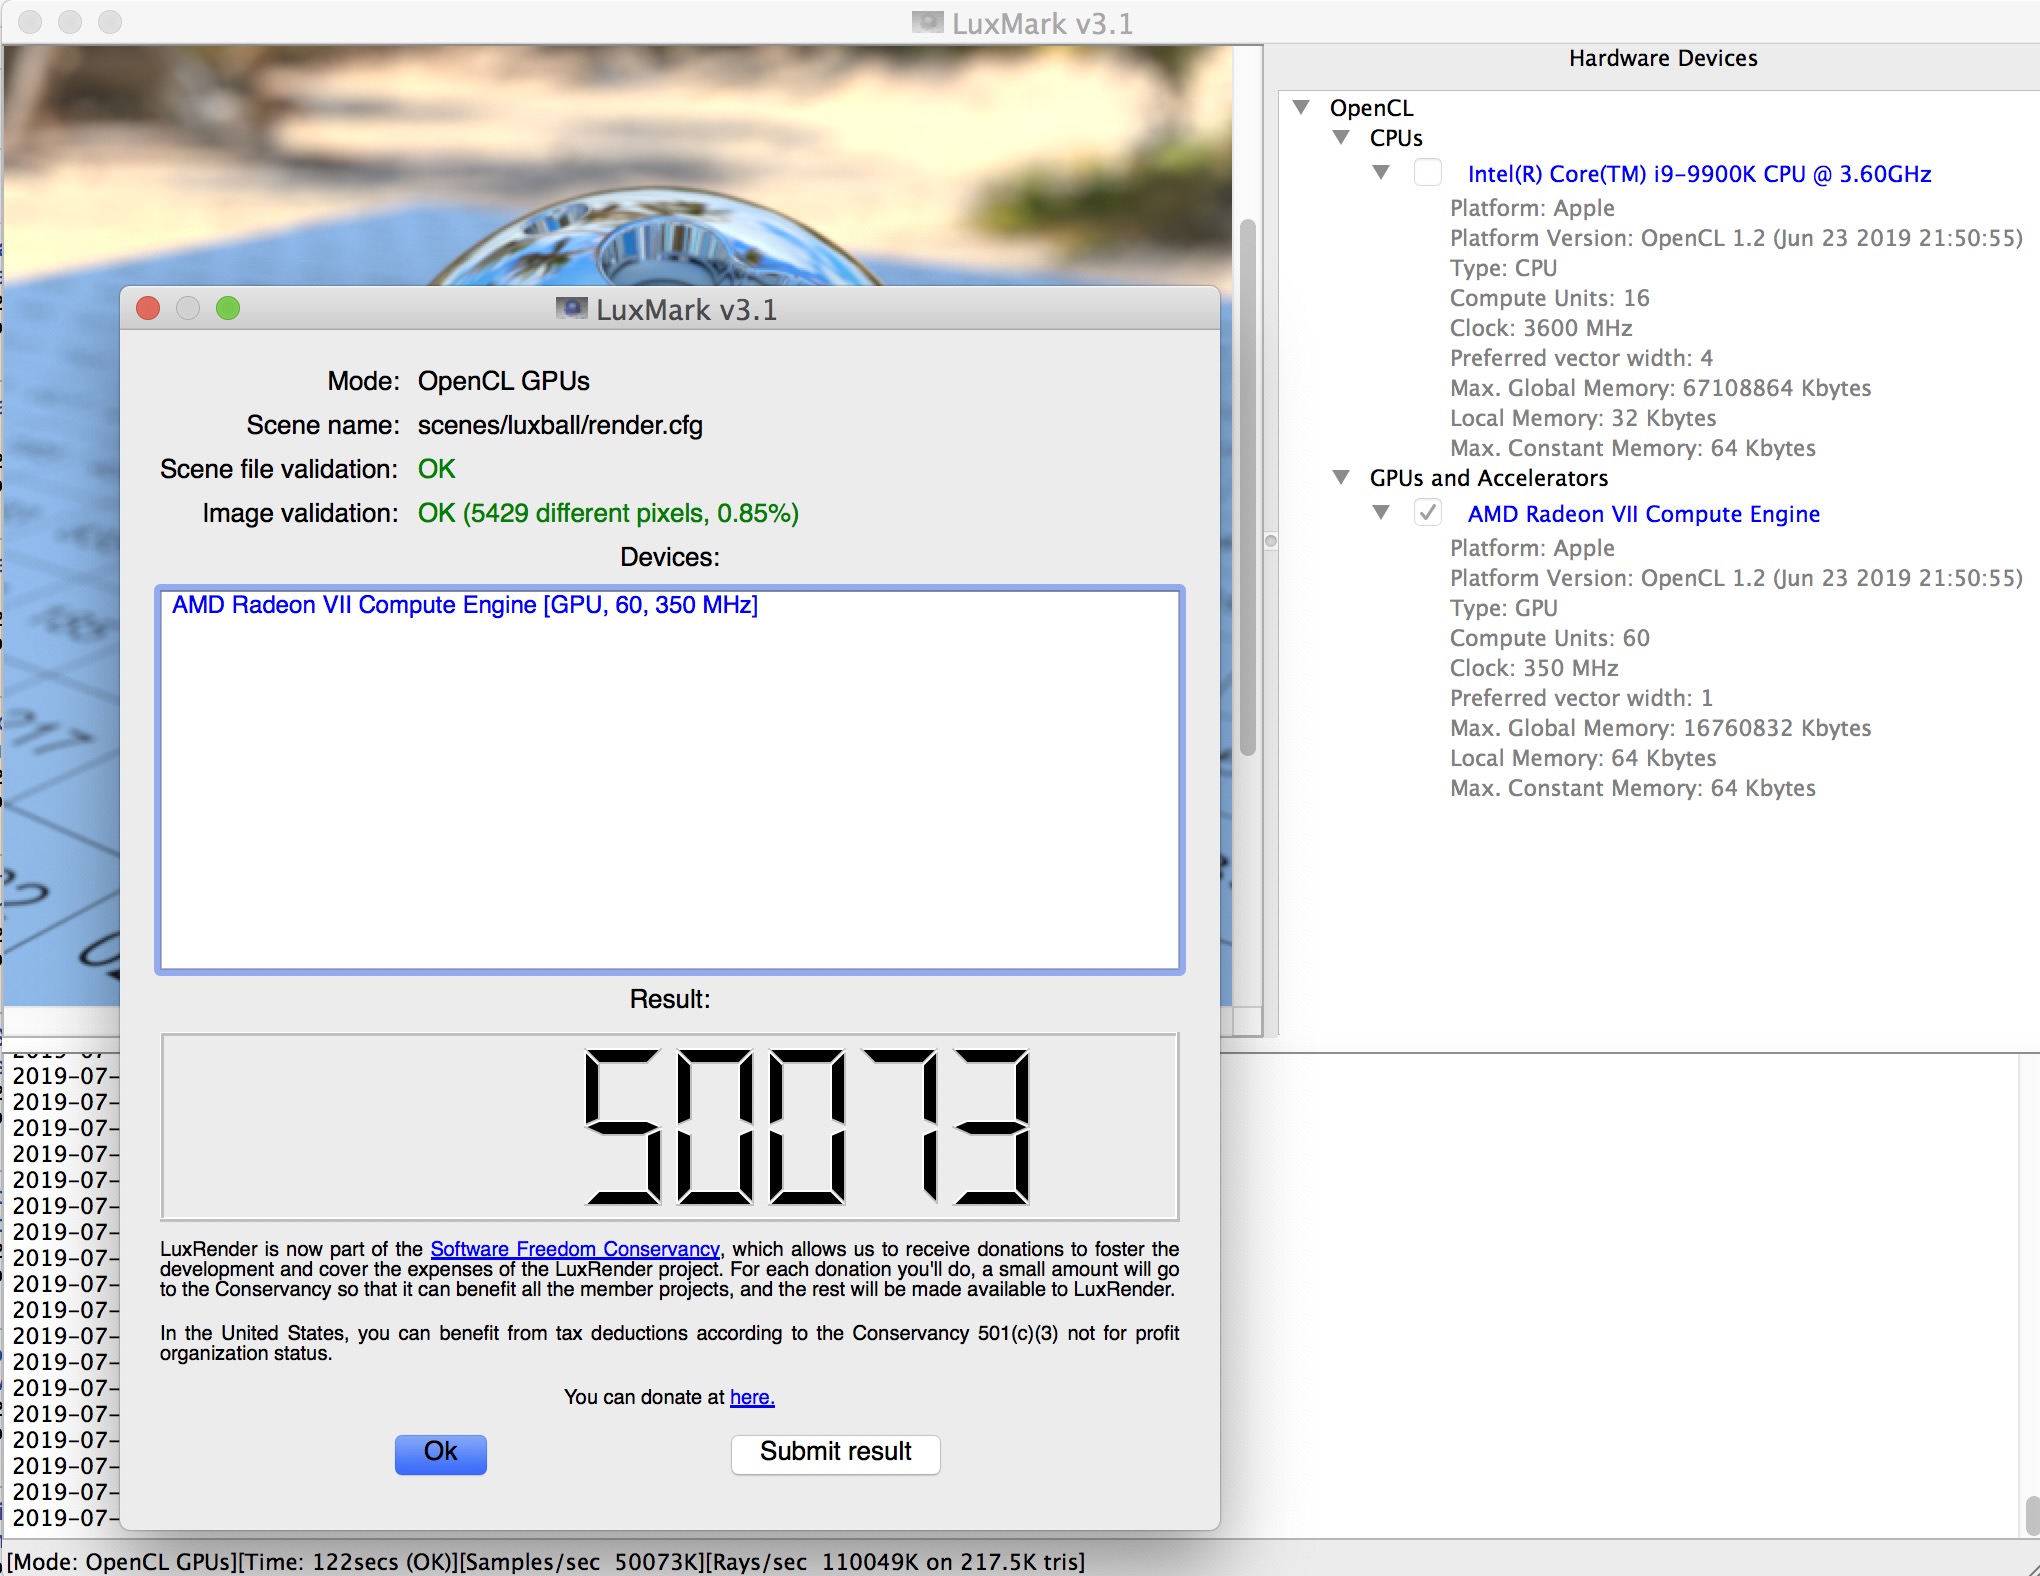 iMacPro1,1-Radeon VII-OpenCore-LuxMark.jpg